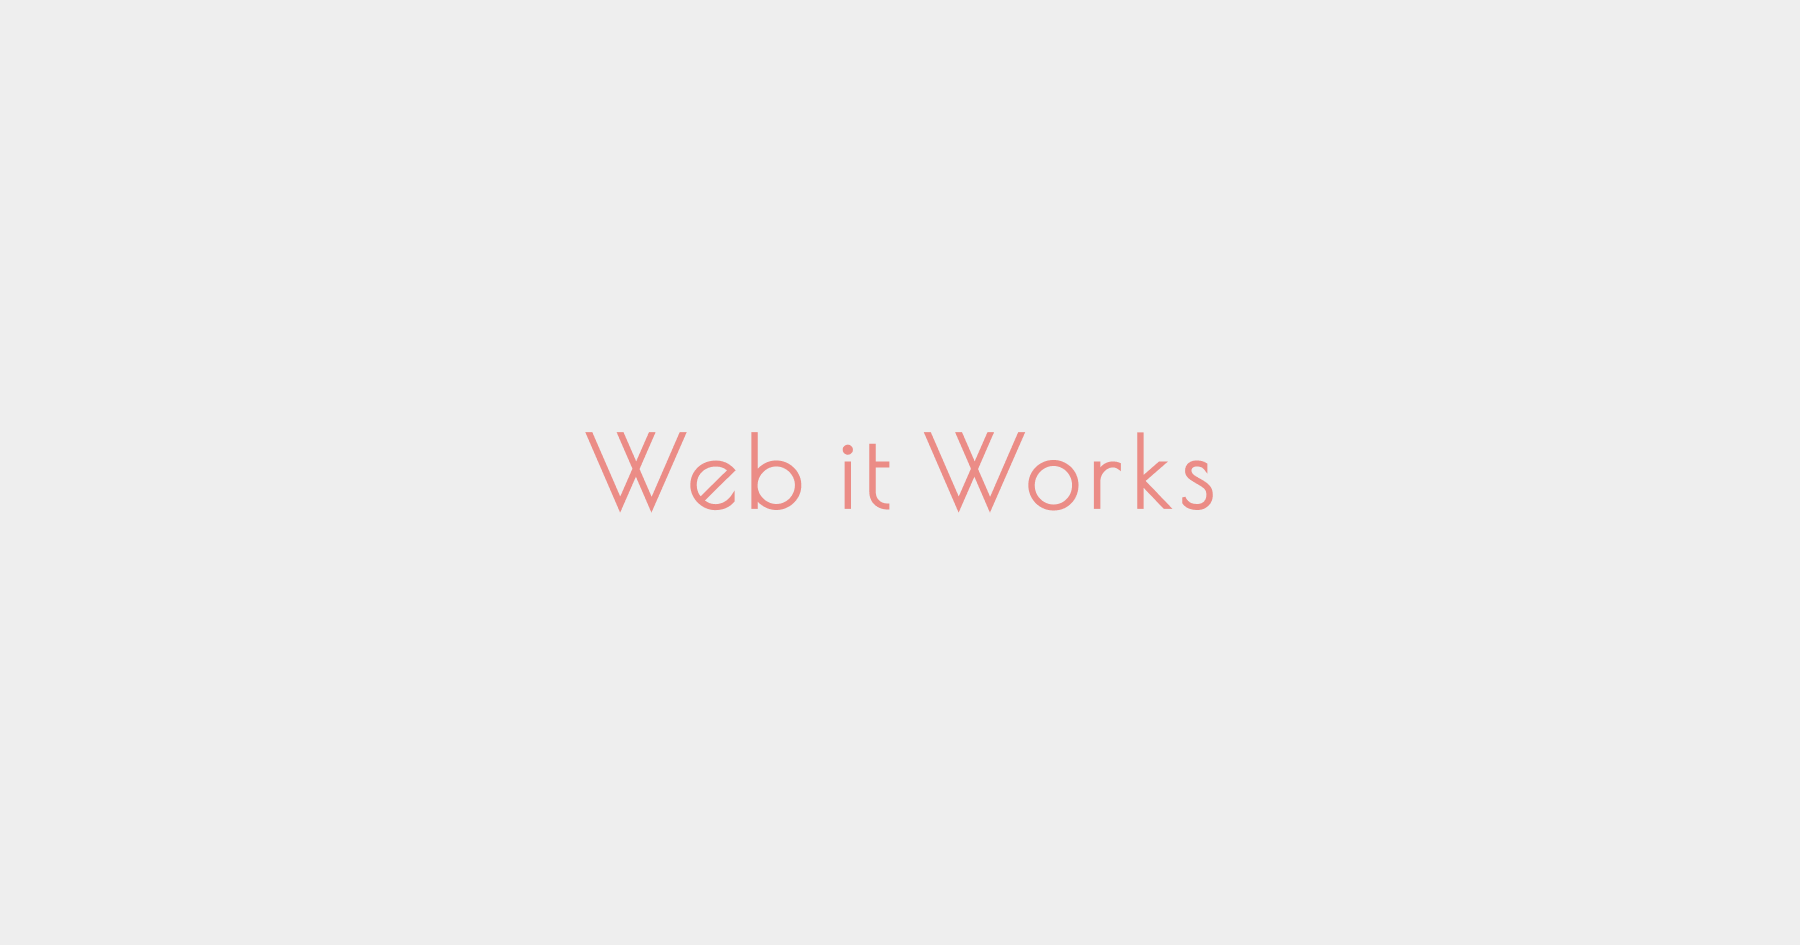 Web it Worksのホームページを公開しました。